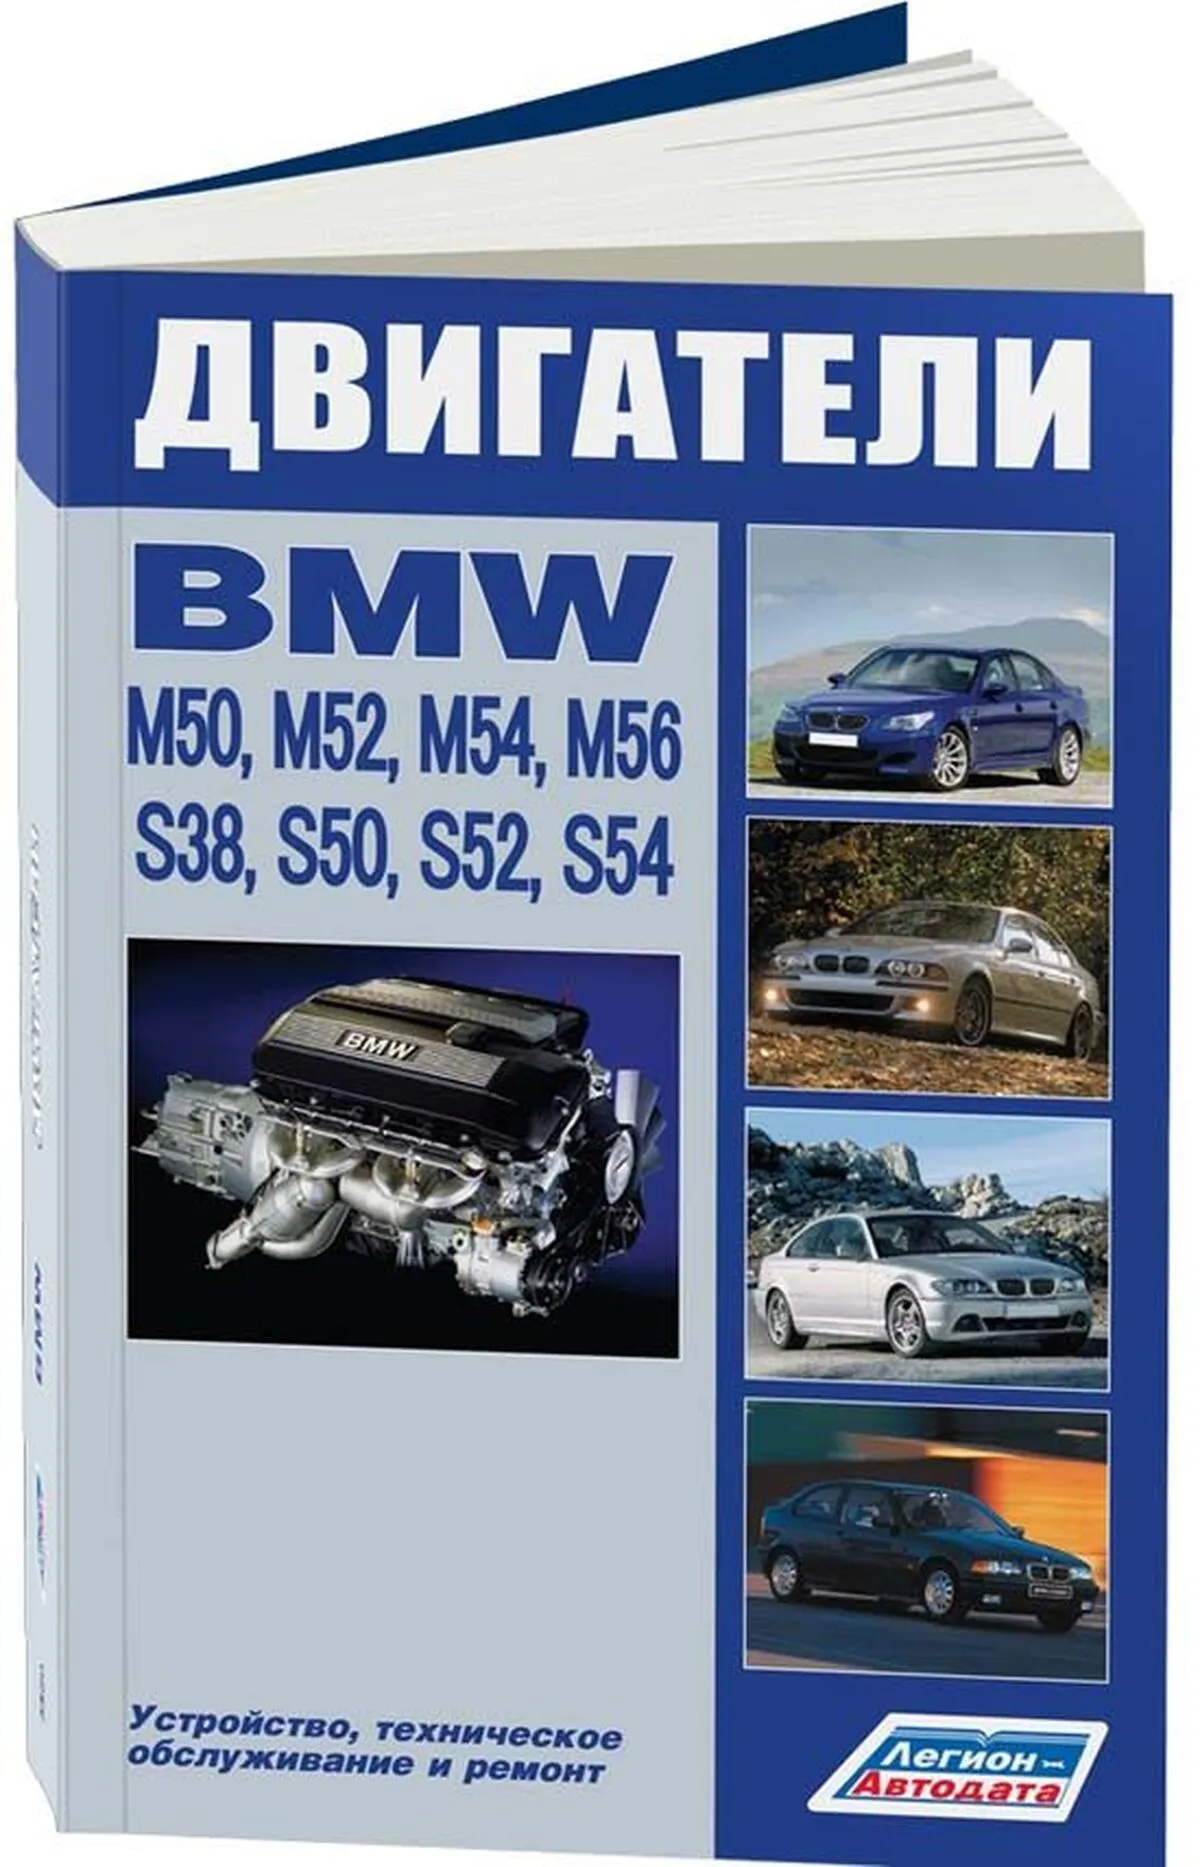 Книга: Двигатели BMW (M50, M52, M54, M56, S38, S50, S52, S54) (б) | Легион-Aвтодата